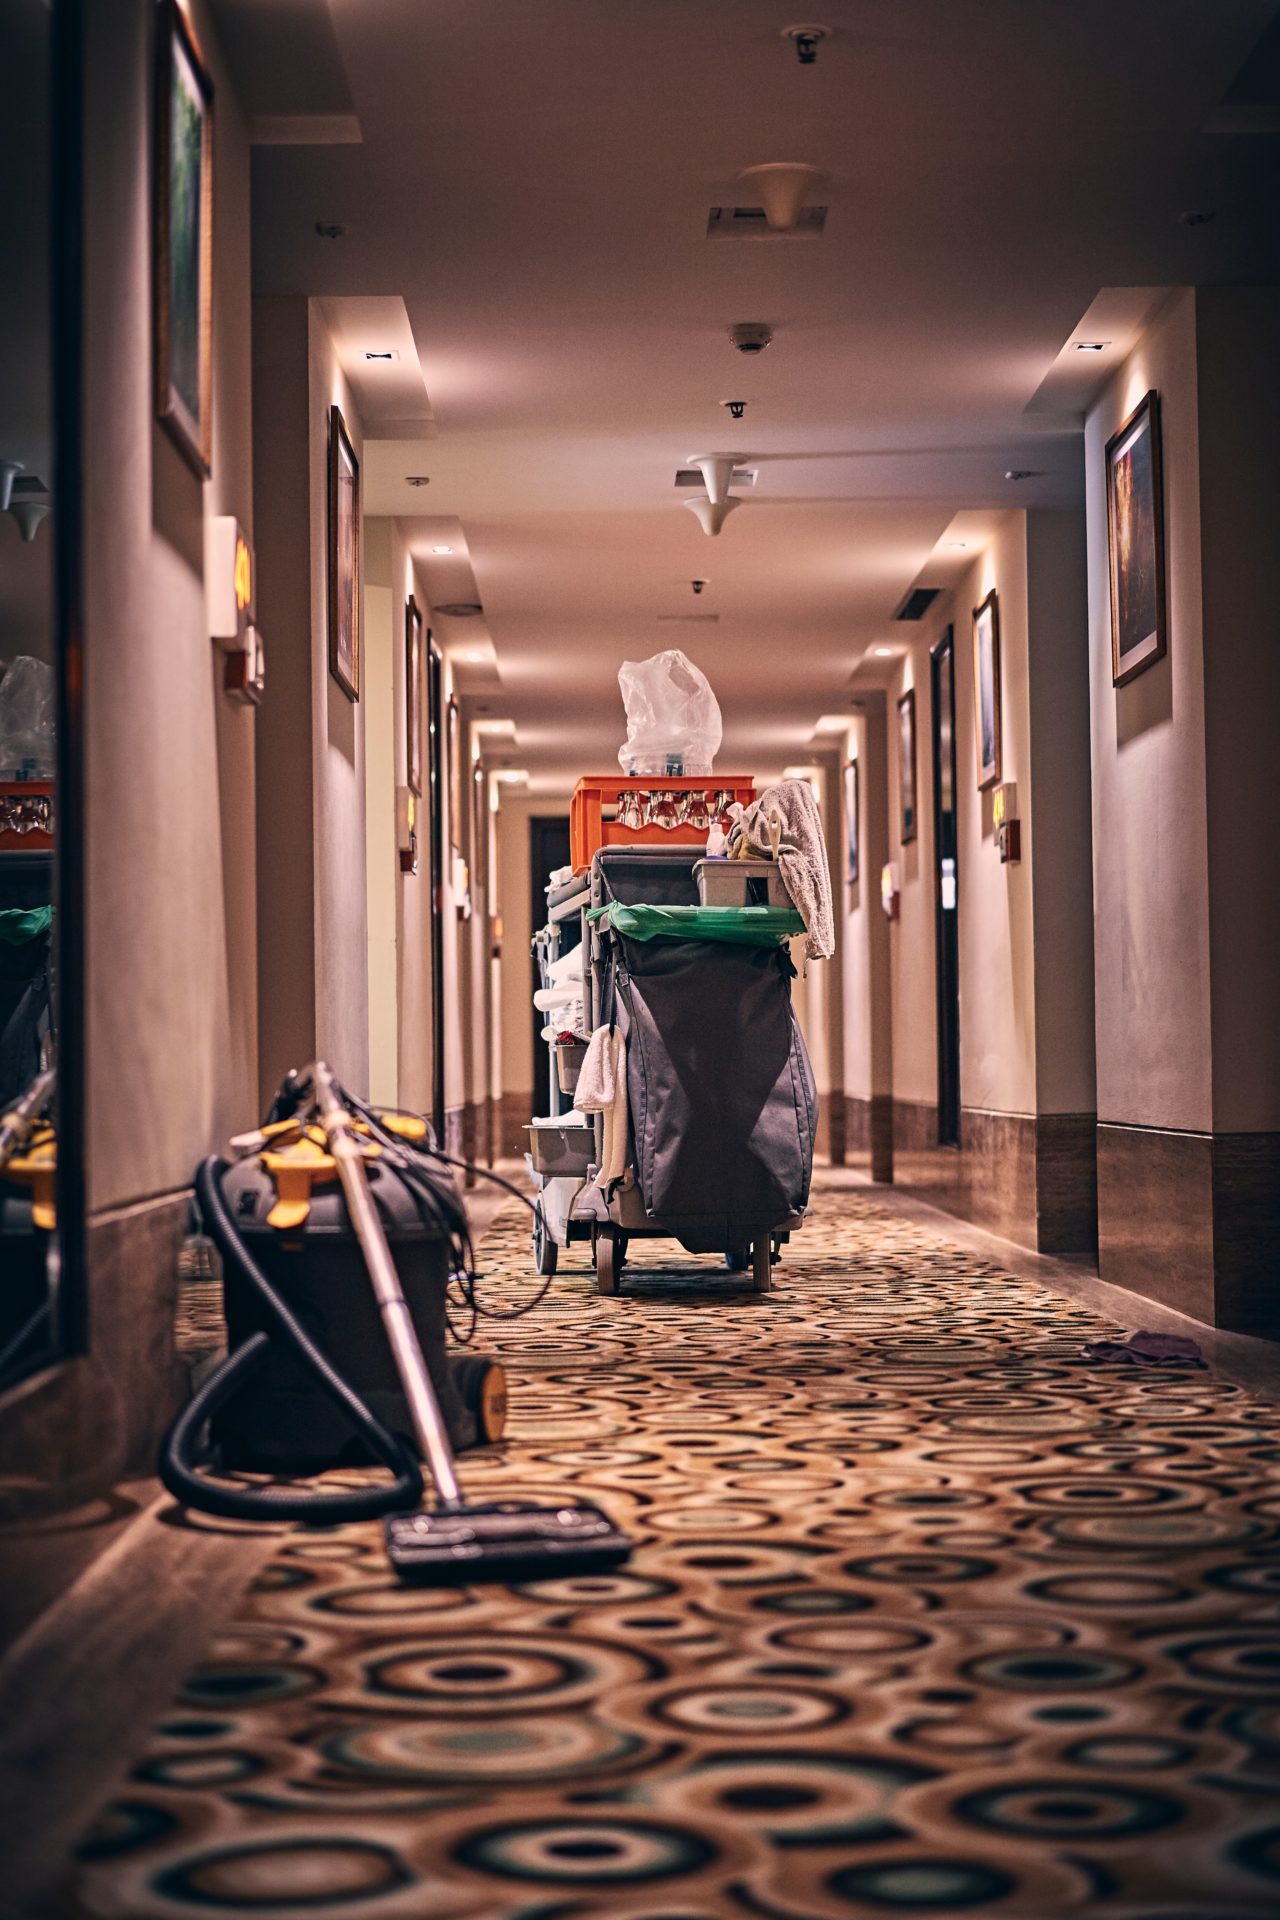 camareras de piso limpieza hoteles